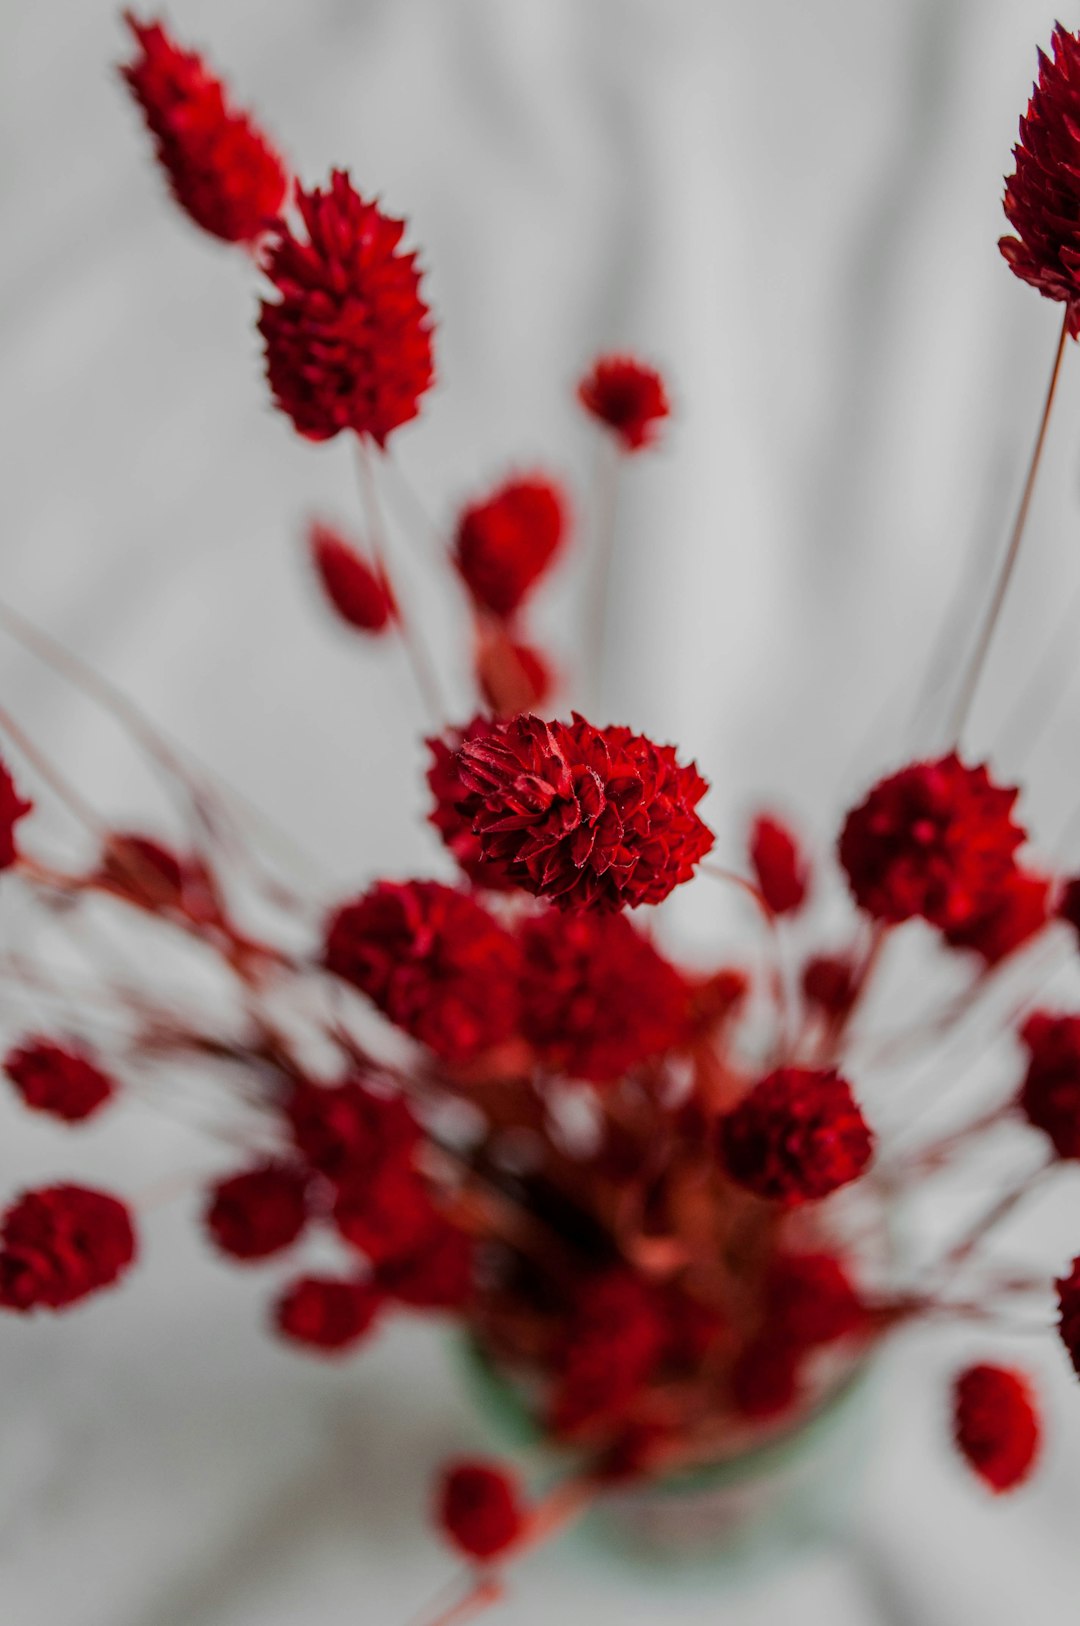 red and white flowers in tilt shift lens